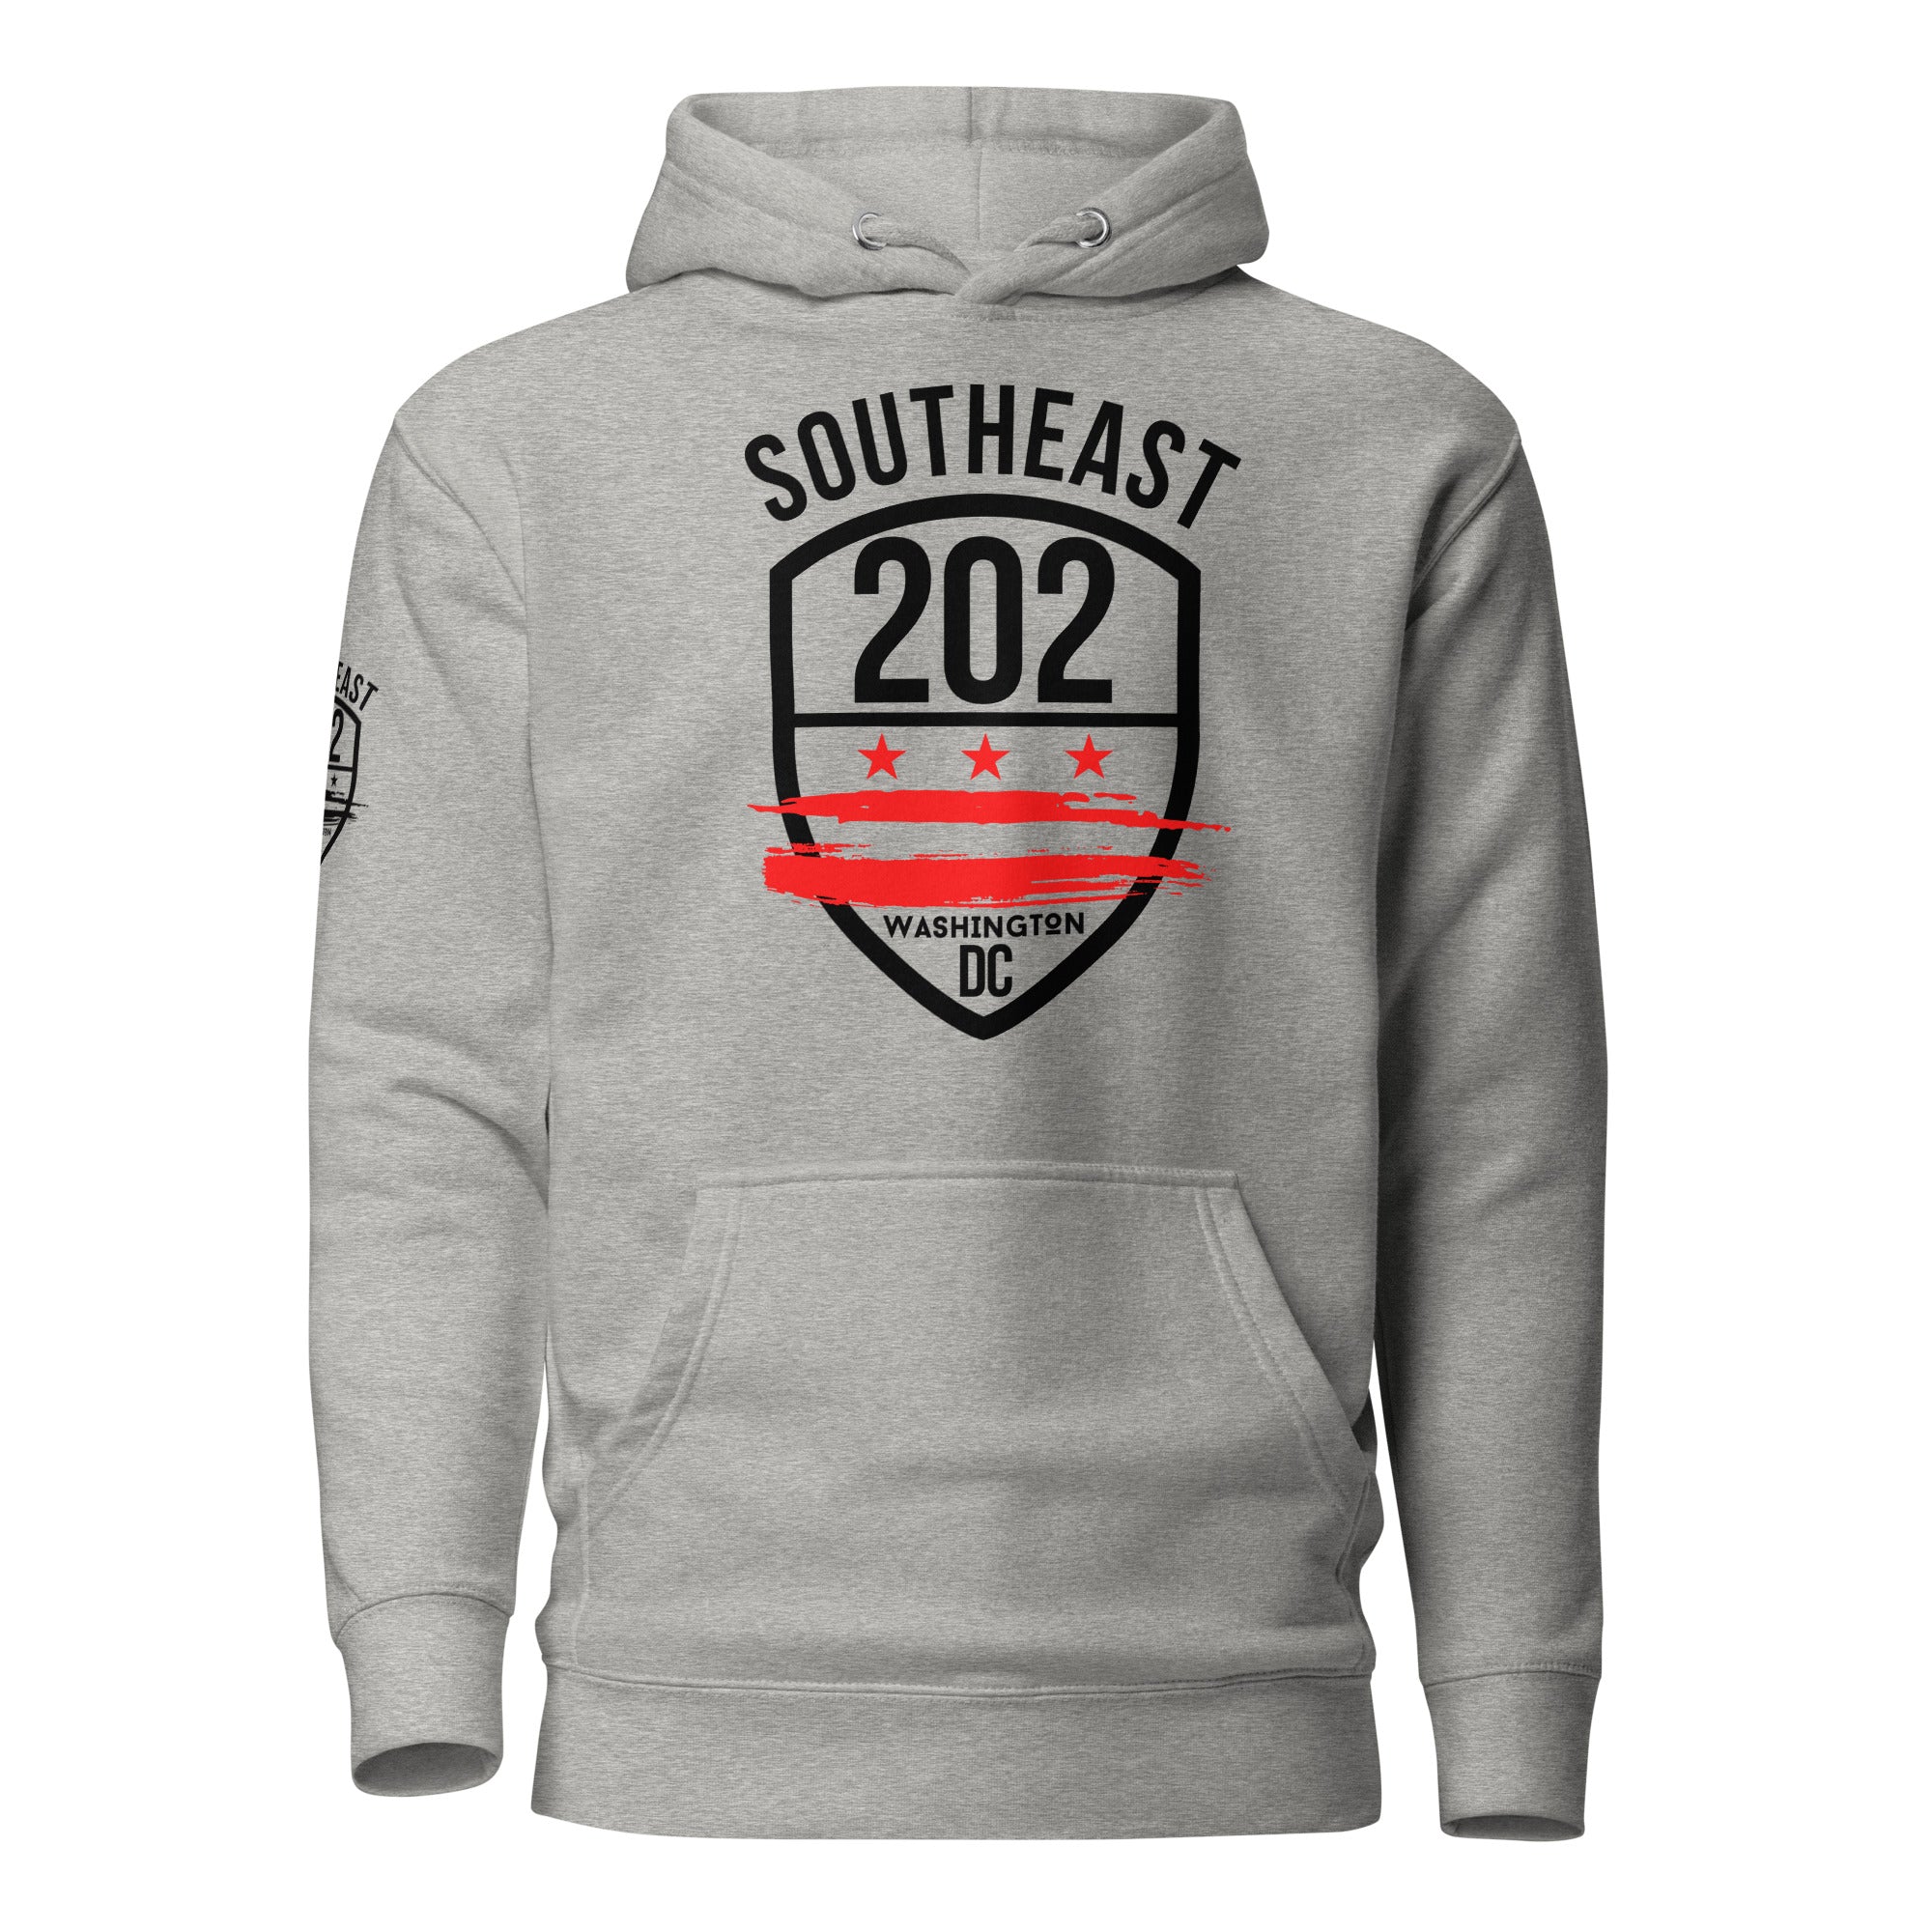 'SOUTHEAST WASHINGTON DC / 202' (Emblem On SLEEVE) -Grey Unisex Hoodie